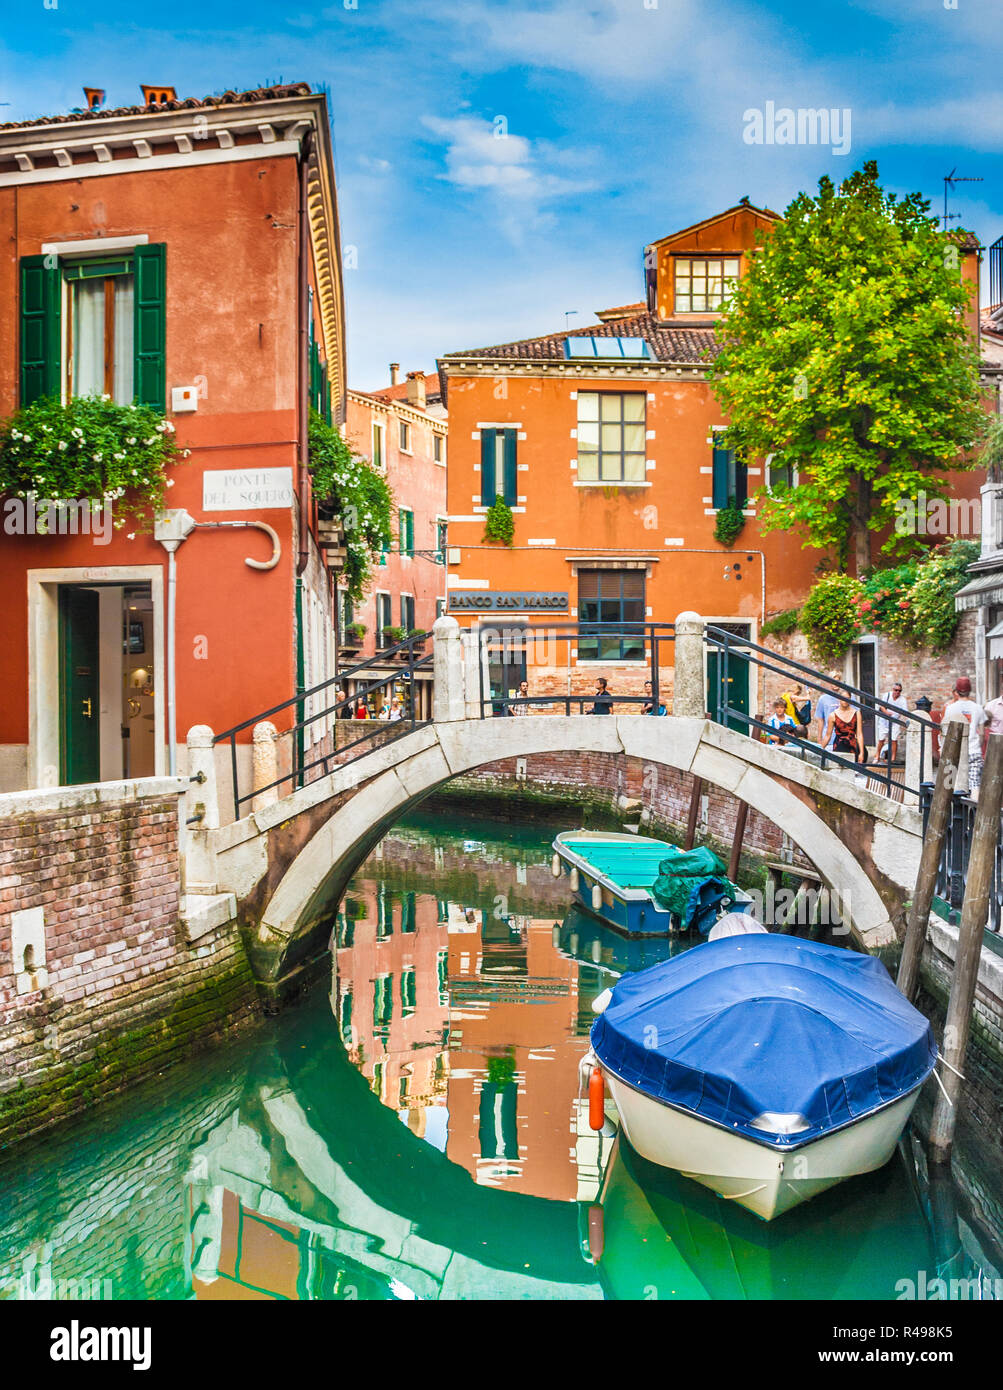 Bella scena con case colorate e le barche su un piccolo canale a Venezia, Italia Foto Stock